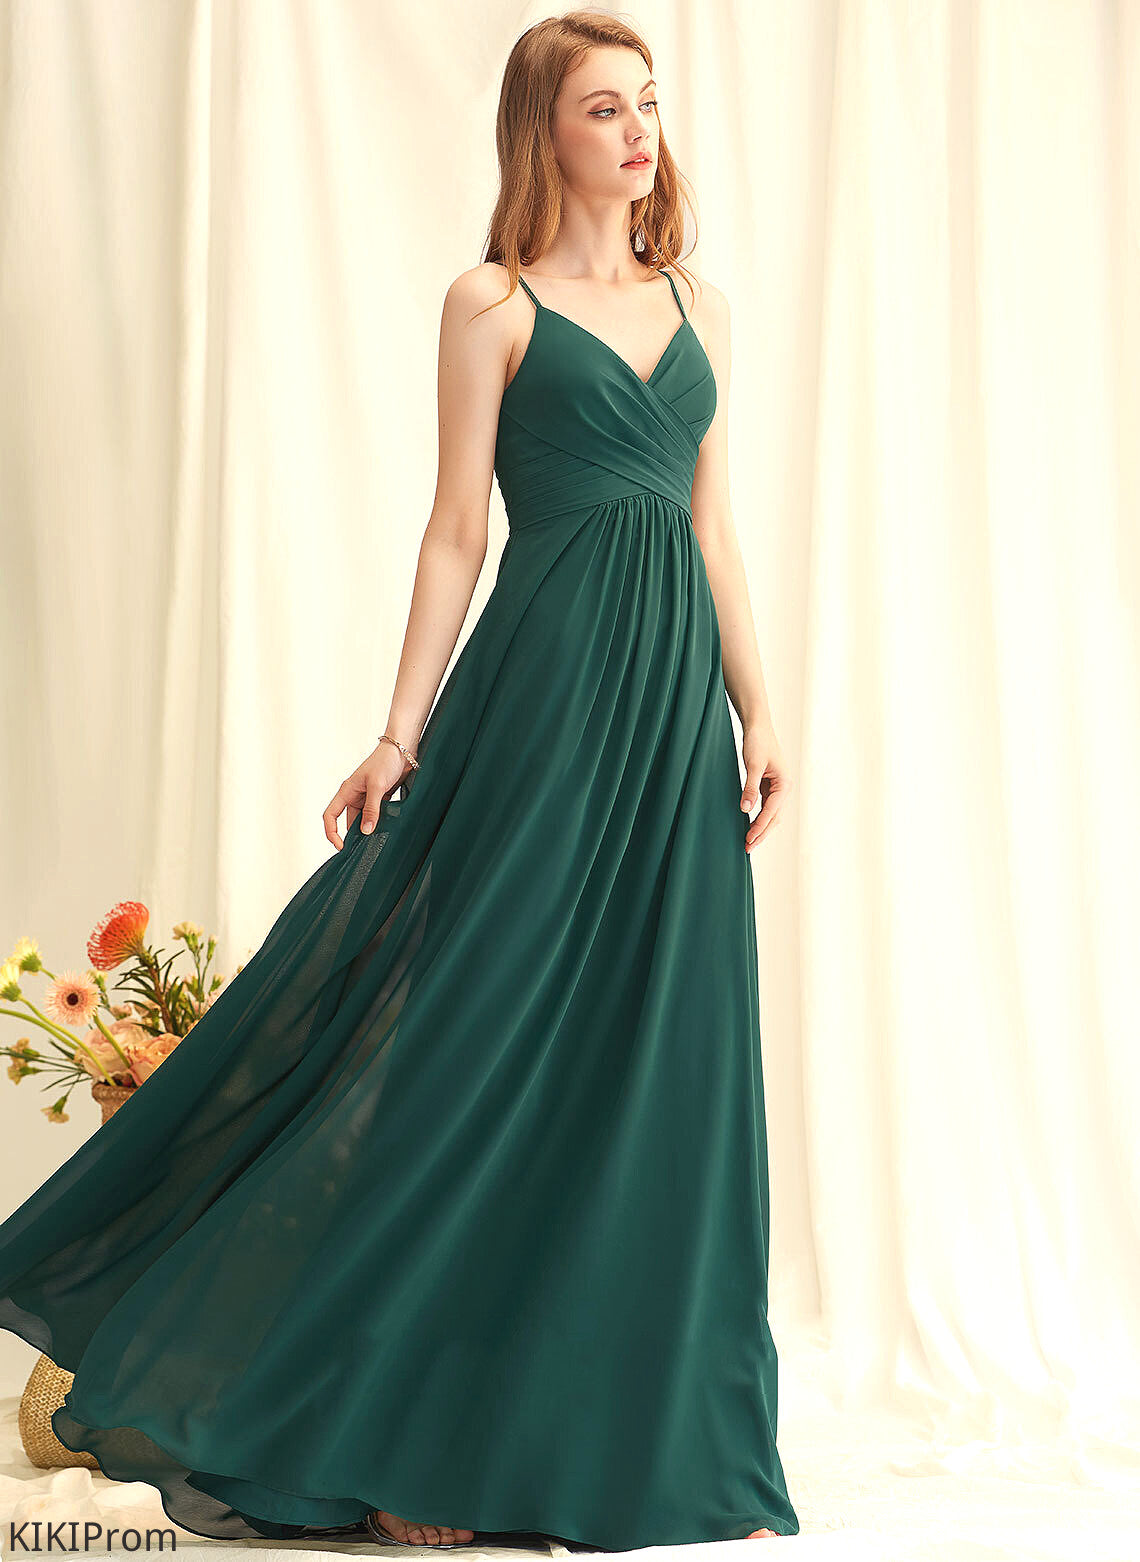 Neckline V-neck Embellishment Fabric Silhouette A-Line Floor-Length Ruffle Length Sal Bridesmaid Dresses